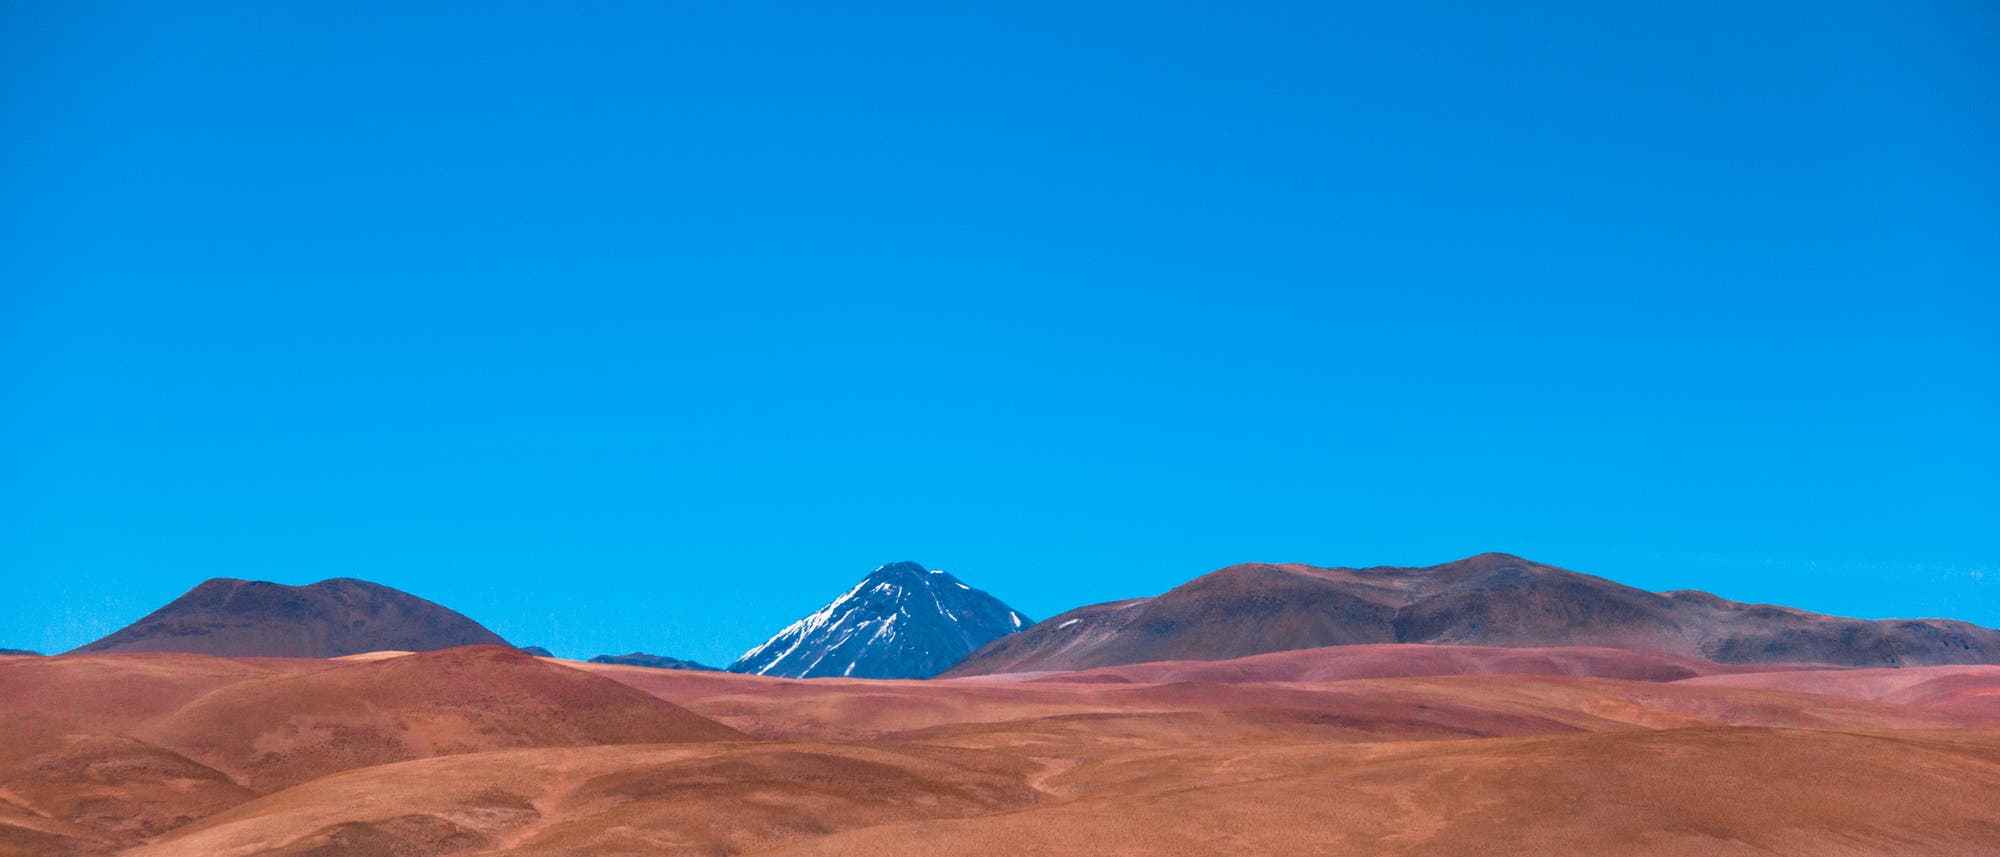 Altiplano in Chile: Ein Vulkan ragt unter einem stahlblauen Himmel über der Wüste auf.